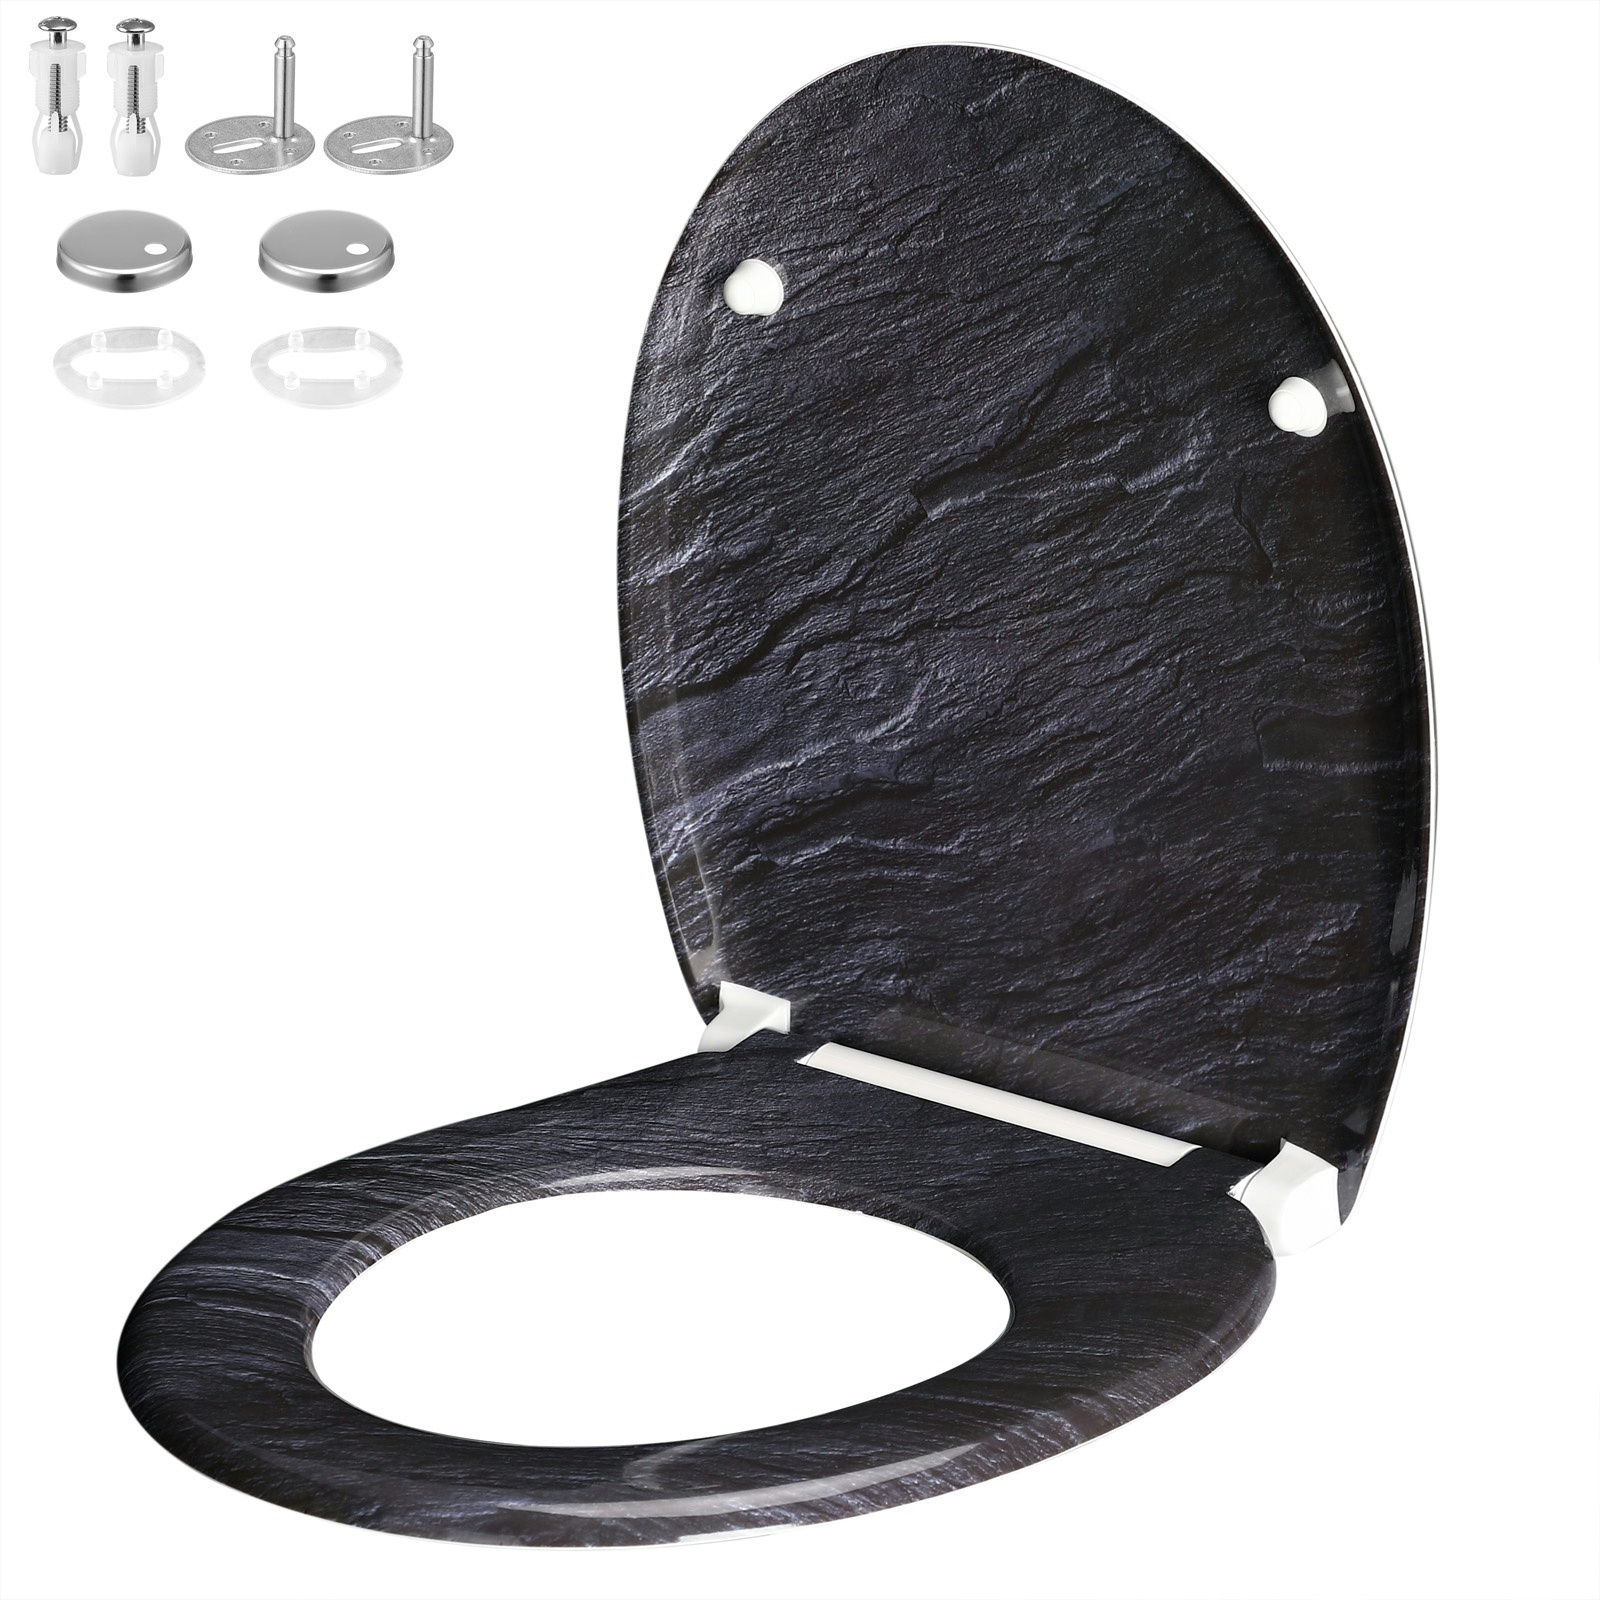 Casaria WC Sitz Toilettendeckel Granit - Duroplast - Doppelte Absenkautomatik